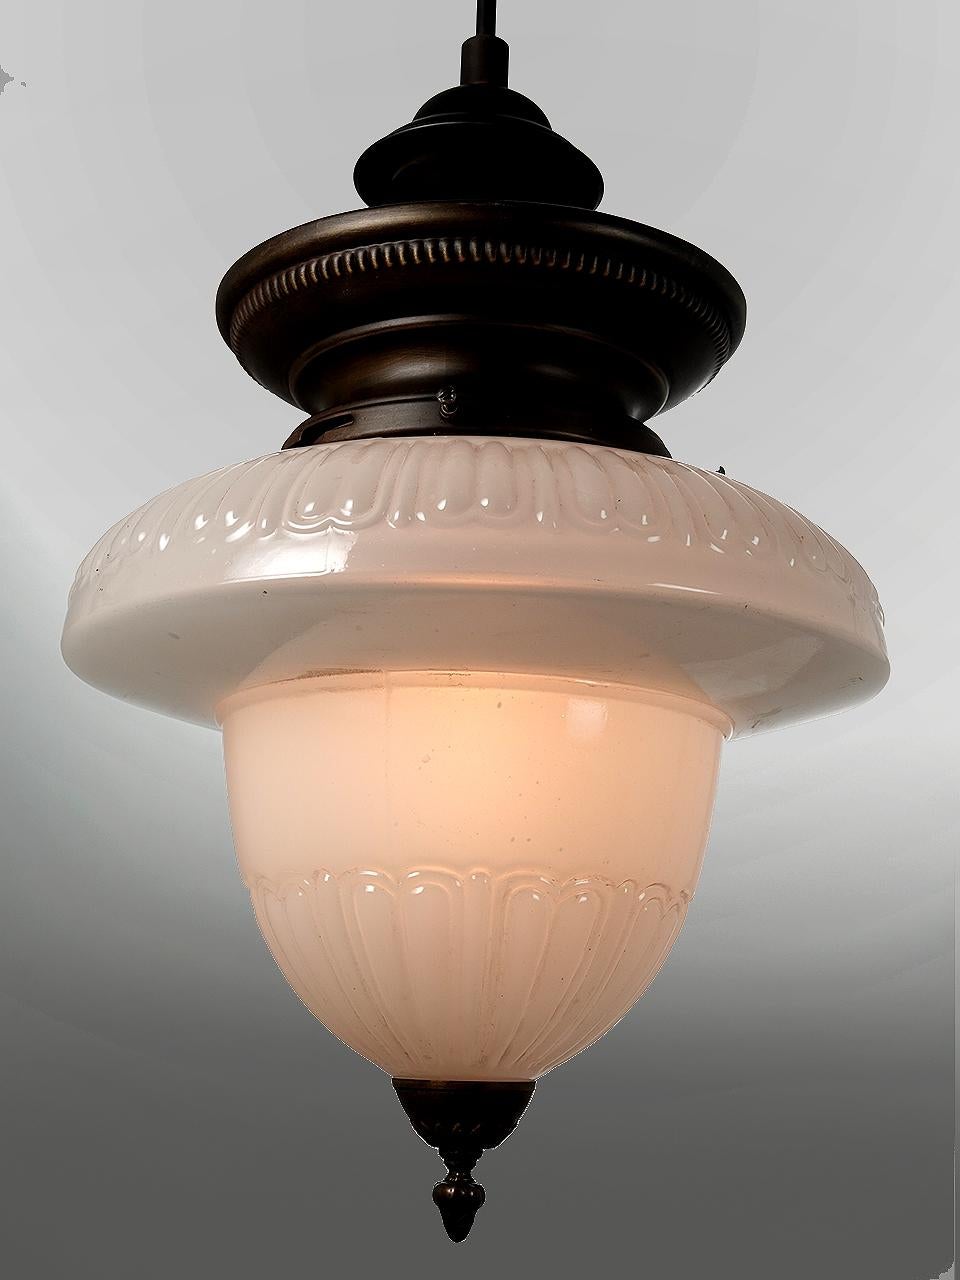 Dies ist eine signierte Humphrey-Gaslampe von 1908, die wir auf eine E26-Glühbirne umgerüstet haben. Der Milchglasschirm hat eine schöne Form, die den Messingaufsatz ergänzt. Der Schirm ist rundherum mit erhabenen Details verziert. Wir fertigen die